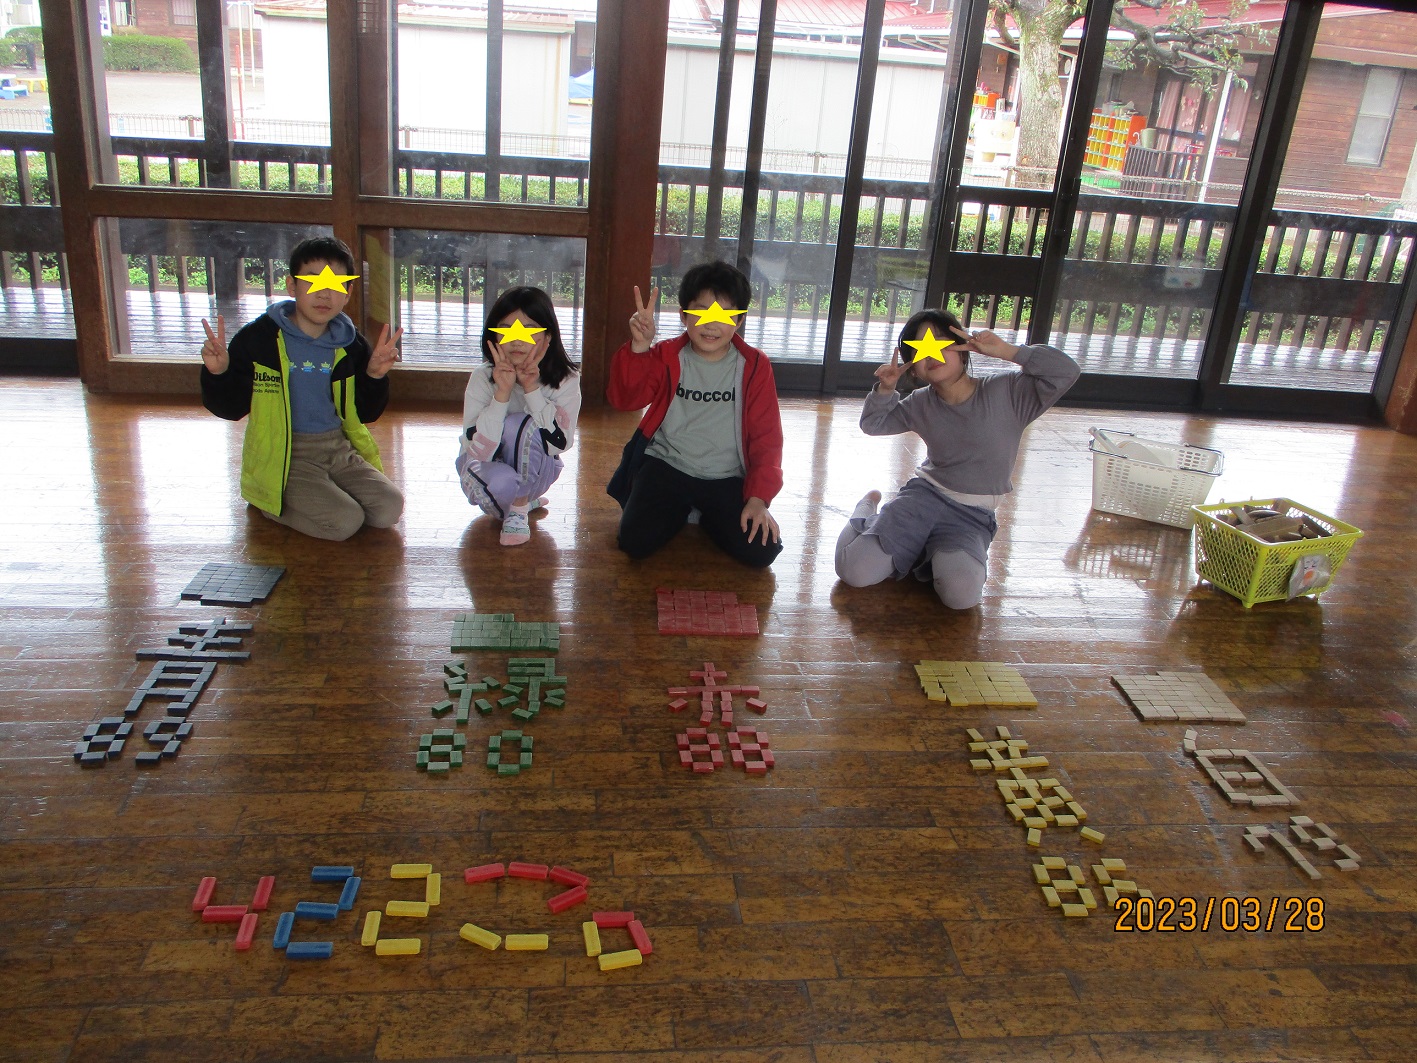 児童館にあるドミノの数を、色分けして数えてくれた子供たち